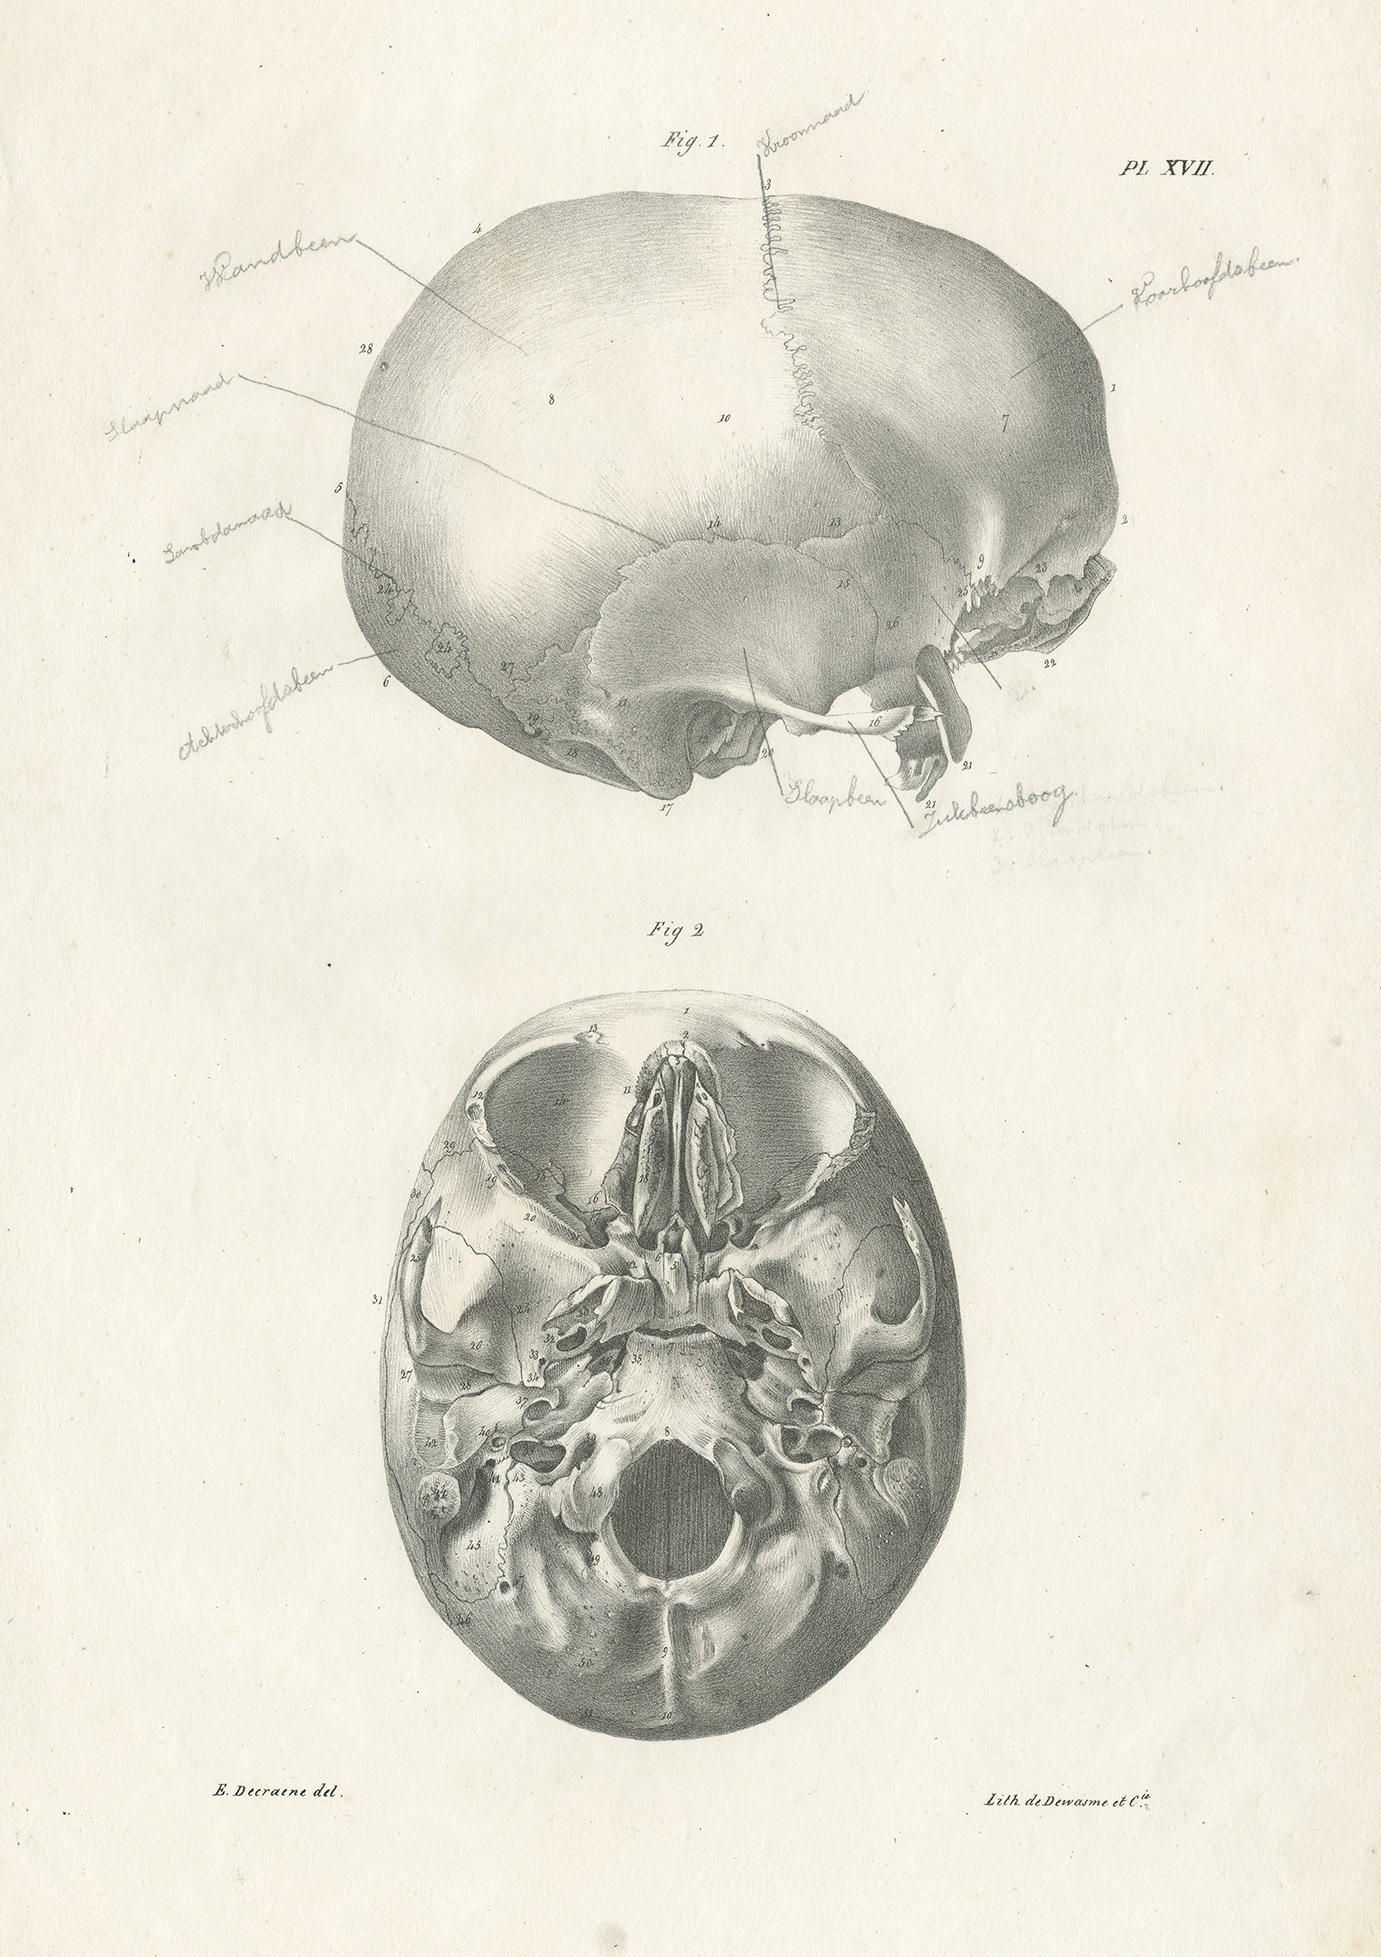 Antique anatomy print showing parts of the skull / cranium. This print originates from 'Anatomie De L'Homme Ou Descriptions Et Figures Lithographiees De Toutes Les Parties Du Corps Humain', by Jules Cloquet. This work was published between 1821-1831